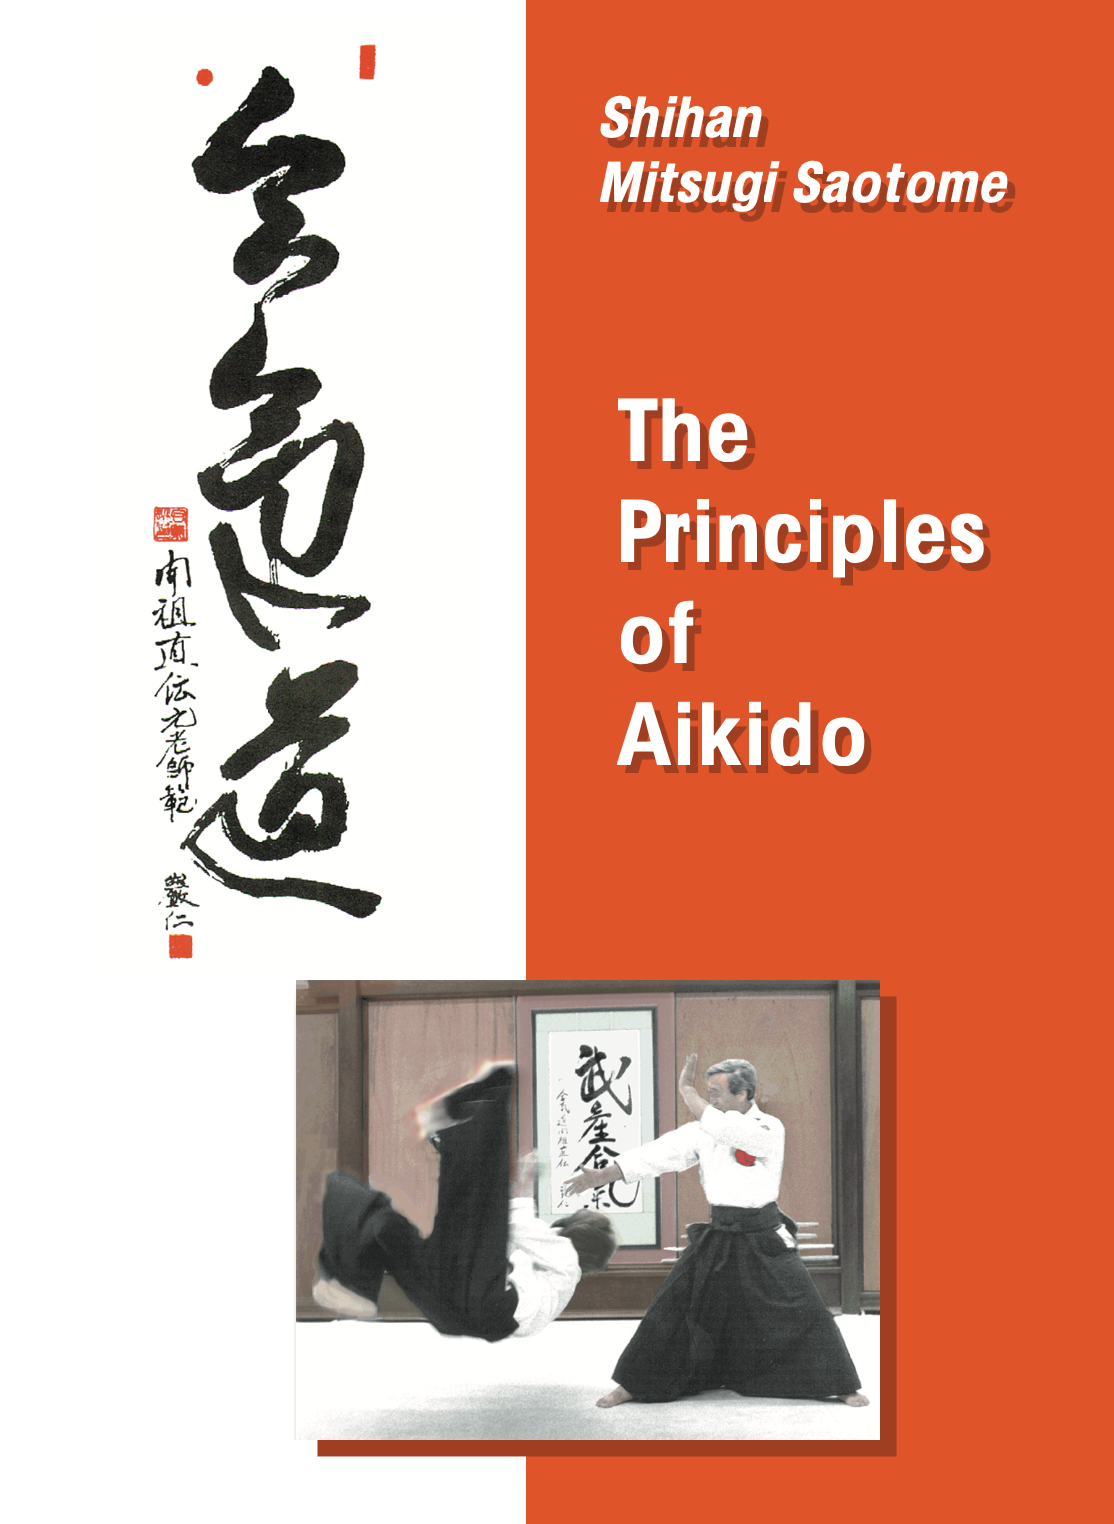 DVD Los principios del Aikido de Mitsugi Saotome